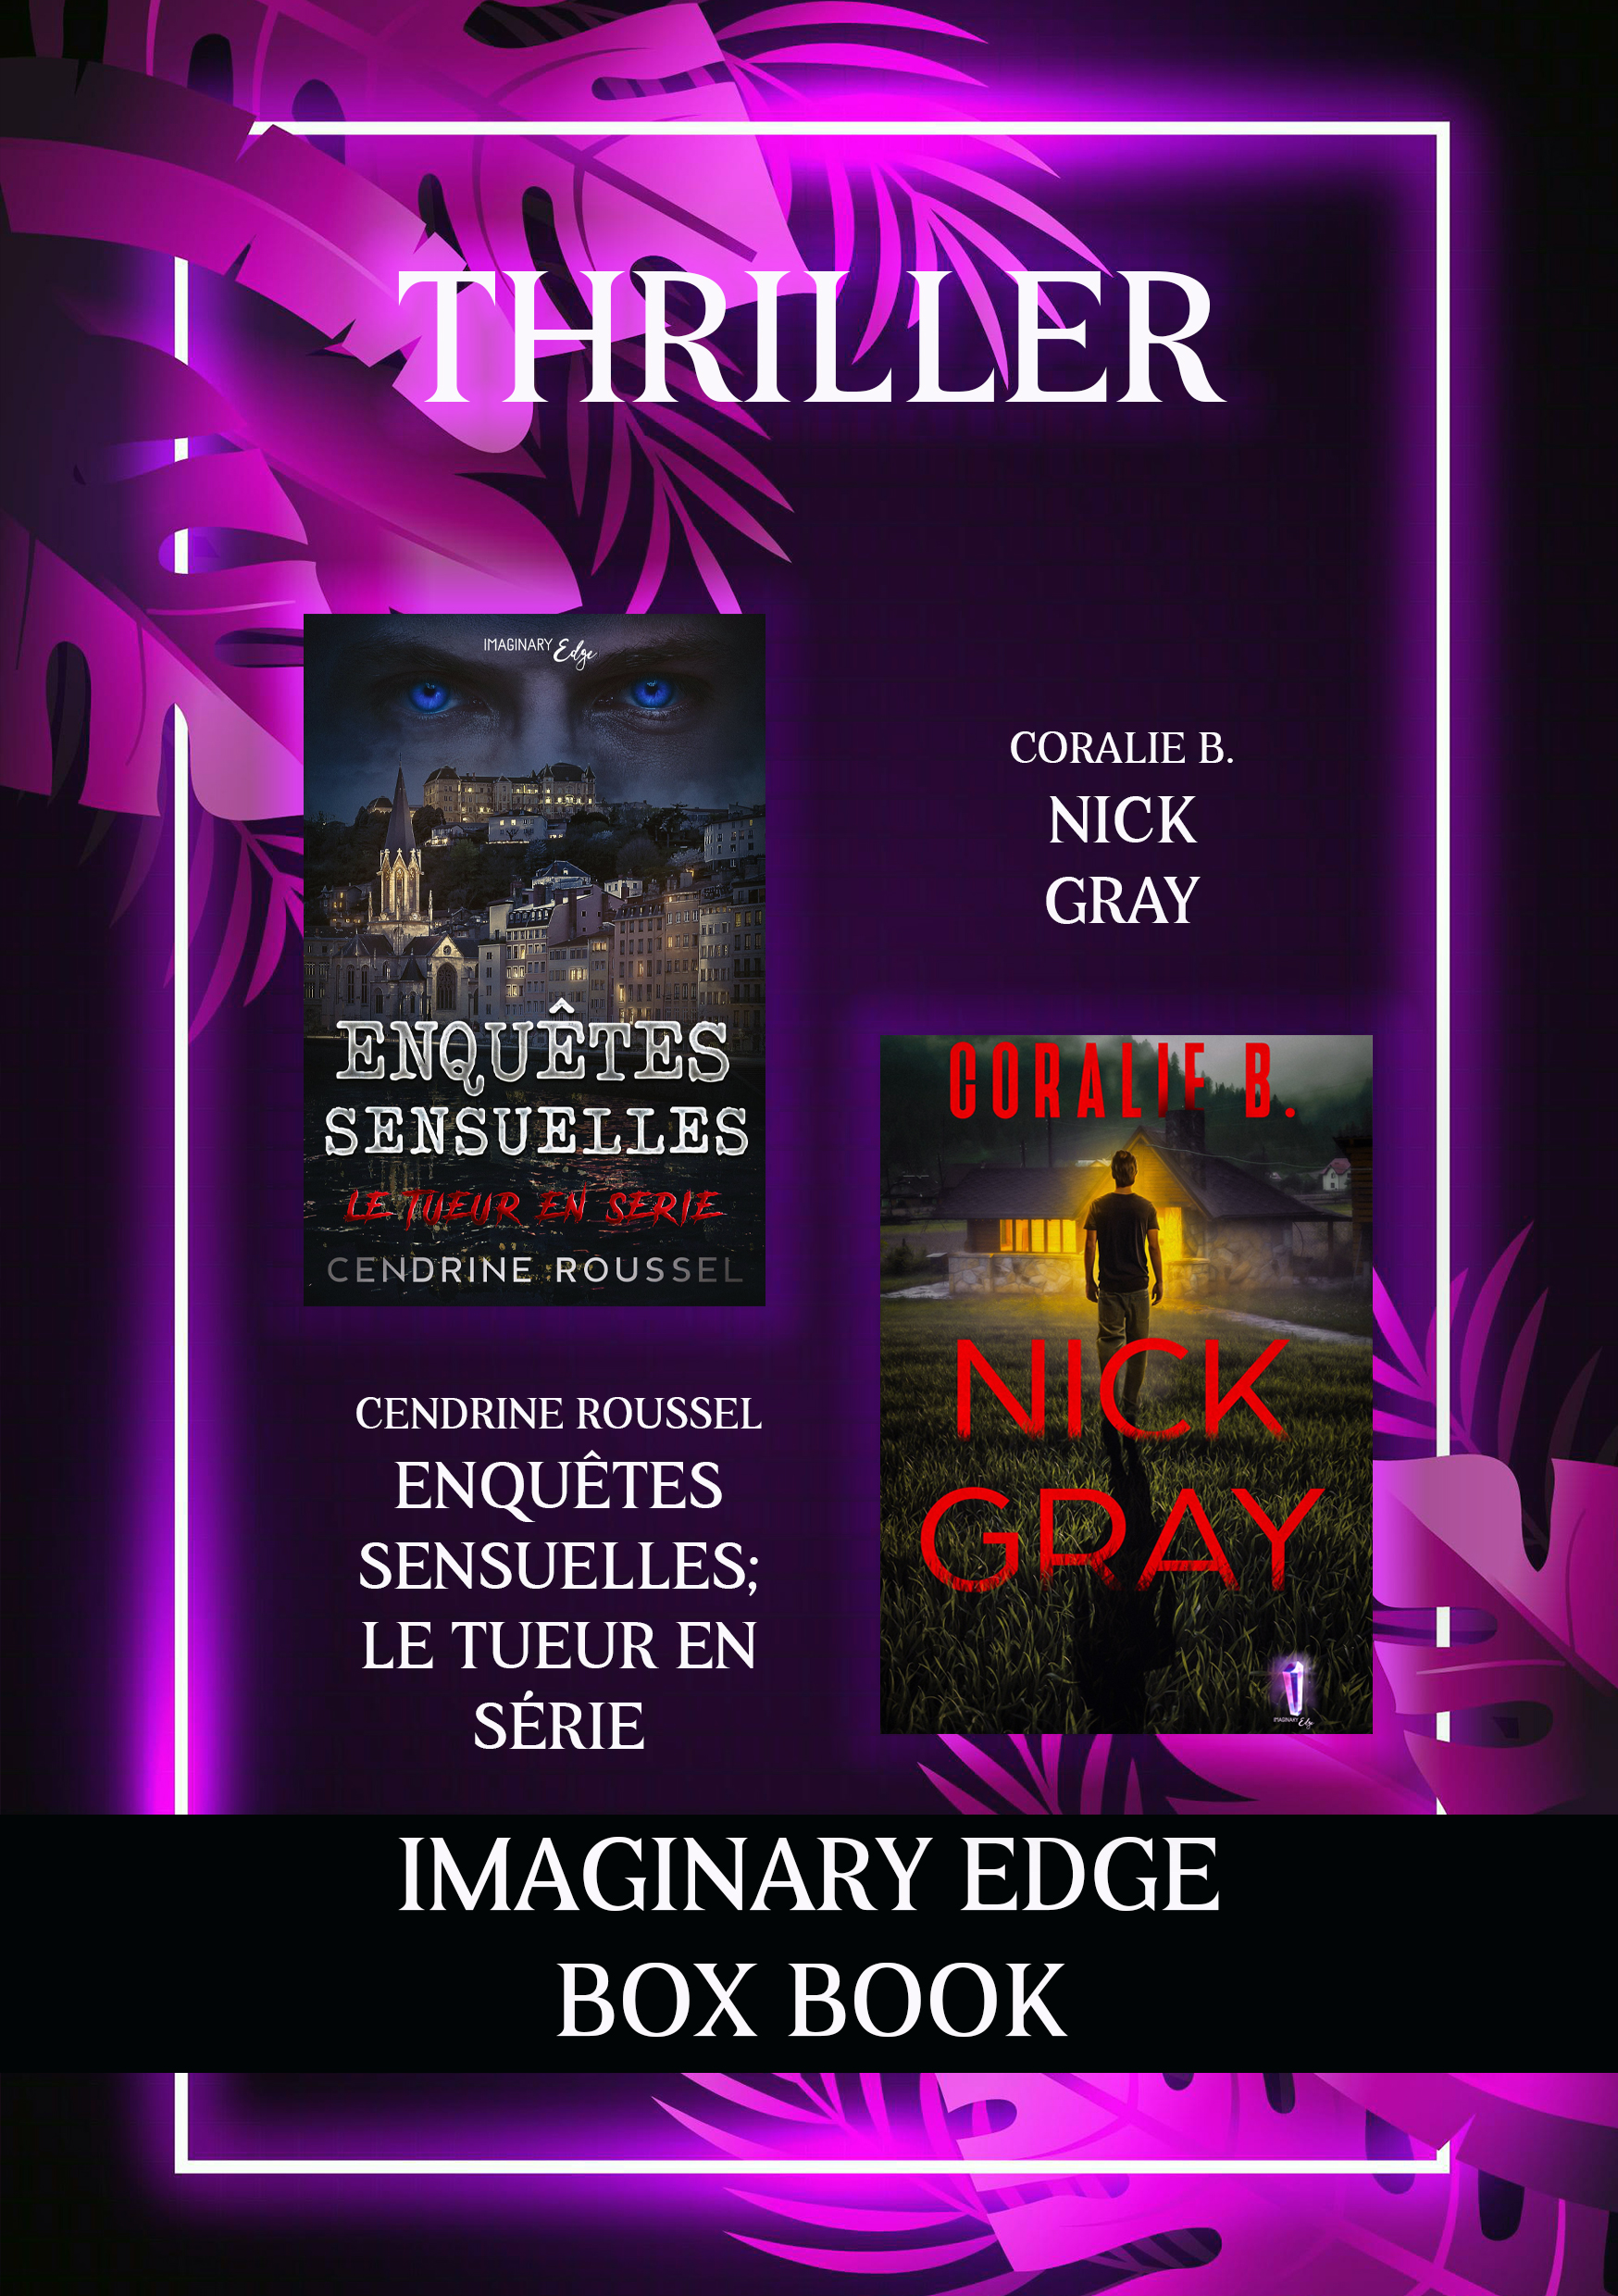 [EBOOK]BOX BOOK Thriller: Enquêtes Sensuelle de Cendrine Roussel et Nick Gray de Coralie B.